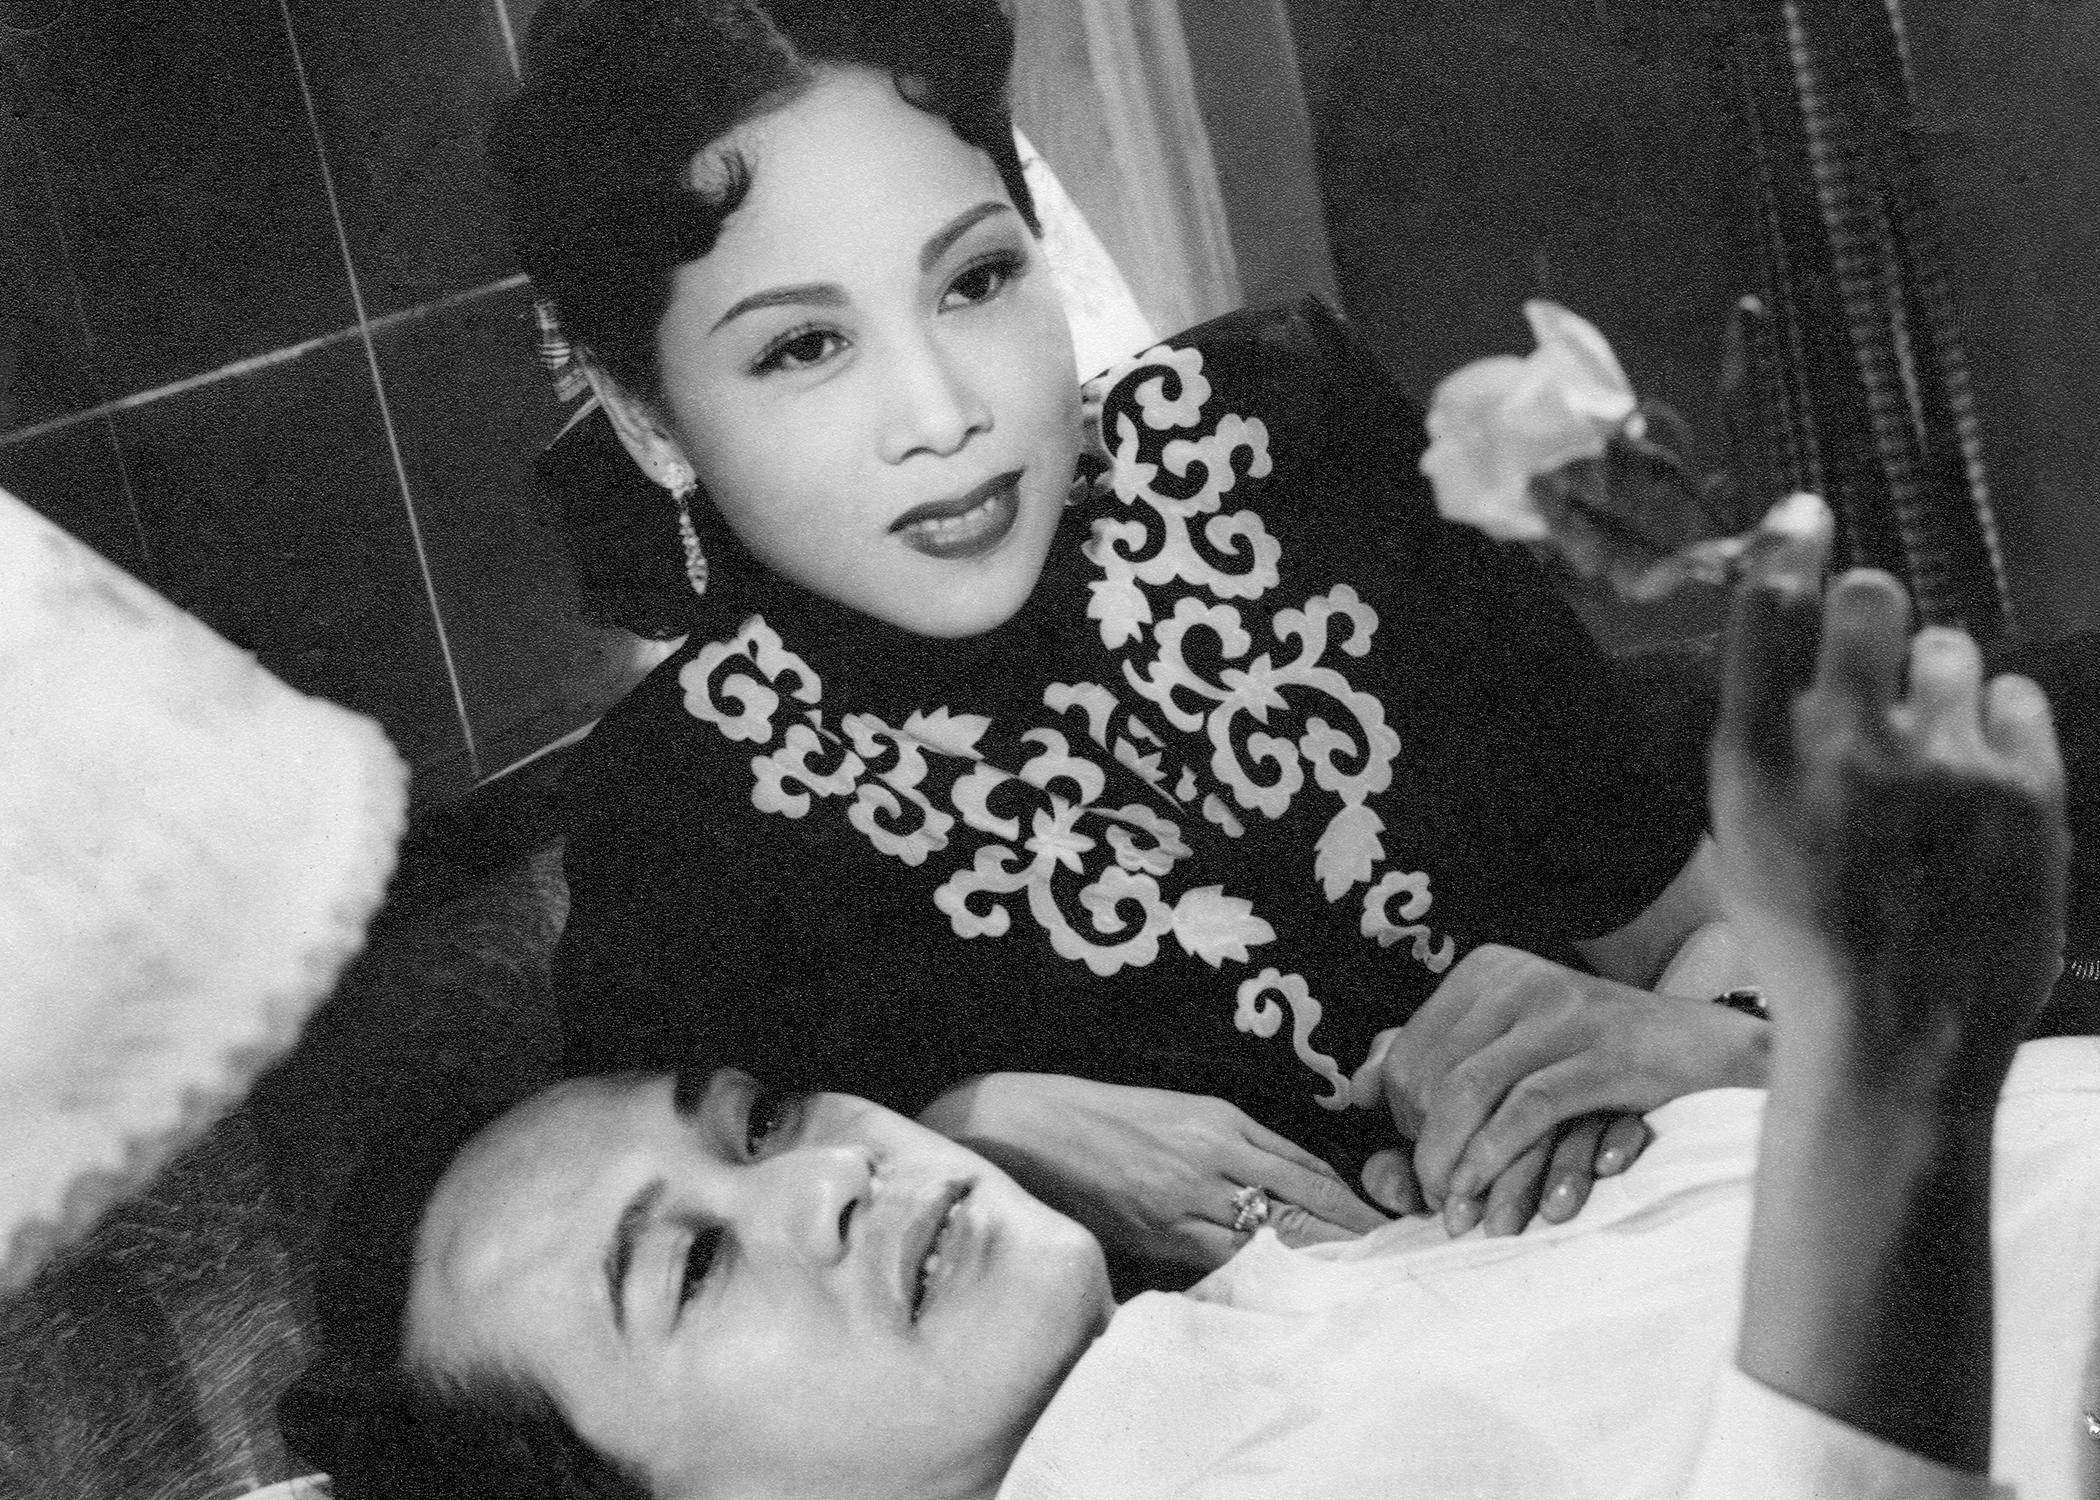 康乐及文化事务署香港电影资料馆由七月至十二月，逢星期五上午十一时的「影画早晨」节目，将精选放映18出芳艳芬经典作品，让戏迷重温这位「花旦王」精湛演技。图示《唔嫁又嫁》（1952）剧照。
